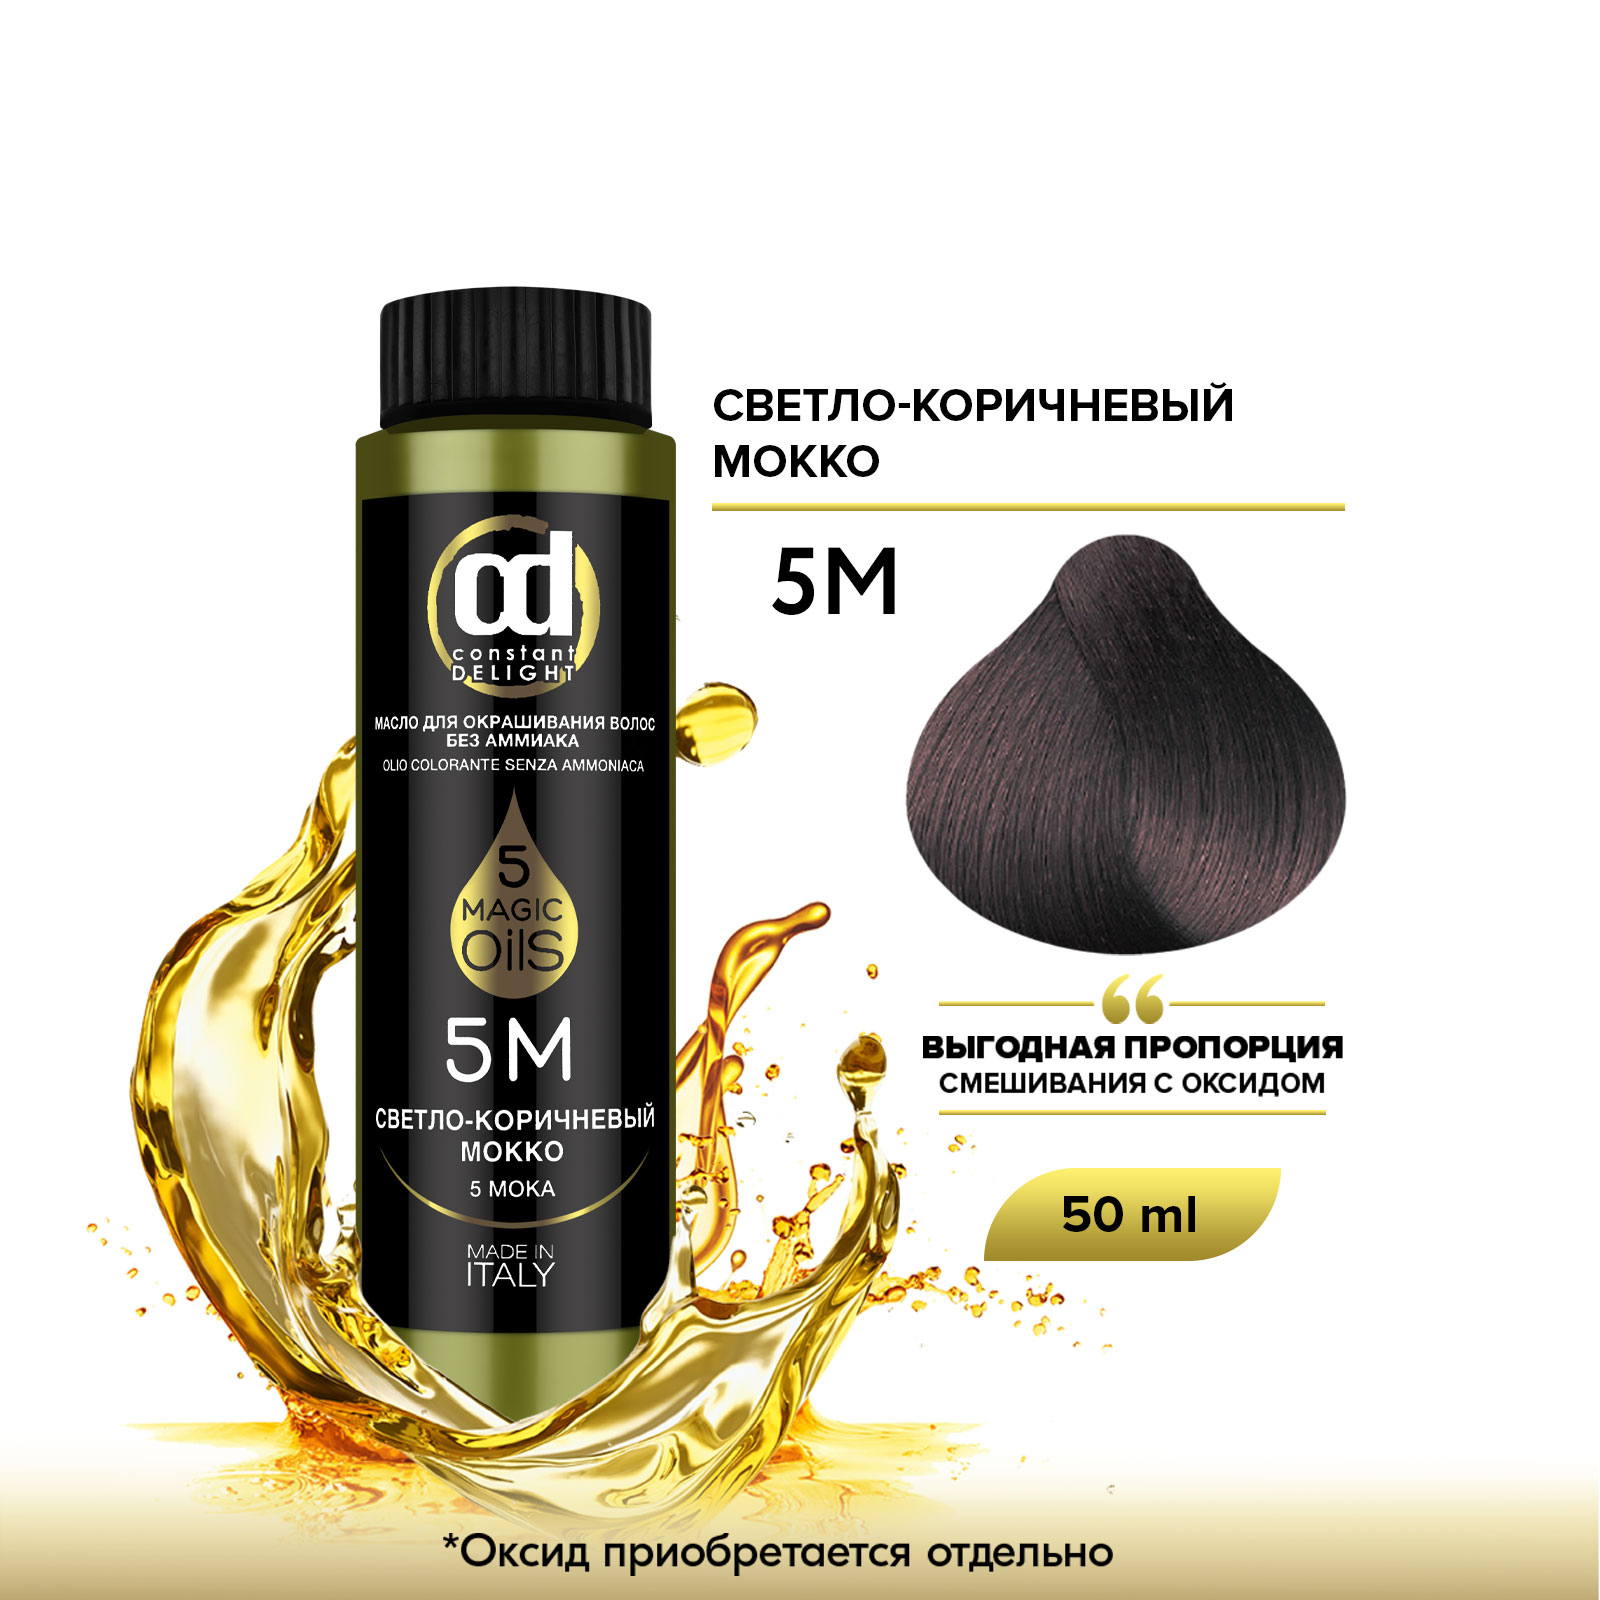 Масло Constant Delight Magic 5 Oils для окрашивания волос 5М светло-коричневый мокко 50 мл масло constant delight magic 5 oils для окрашивания волос 7м средне русый мокко 50 мл